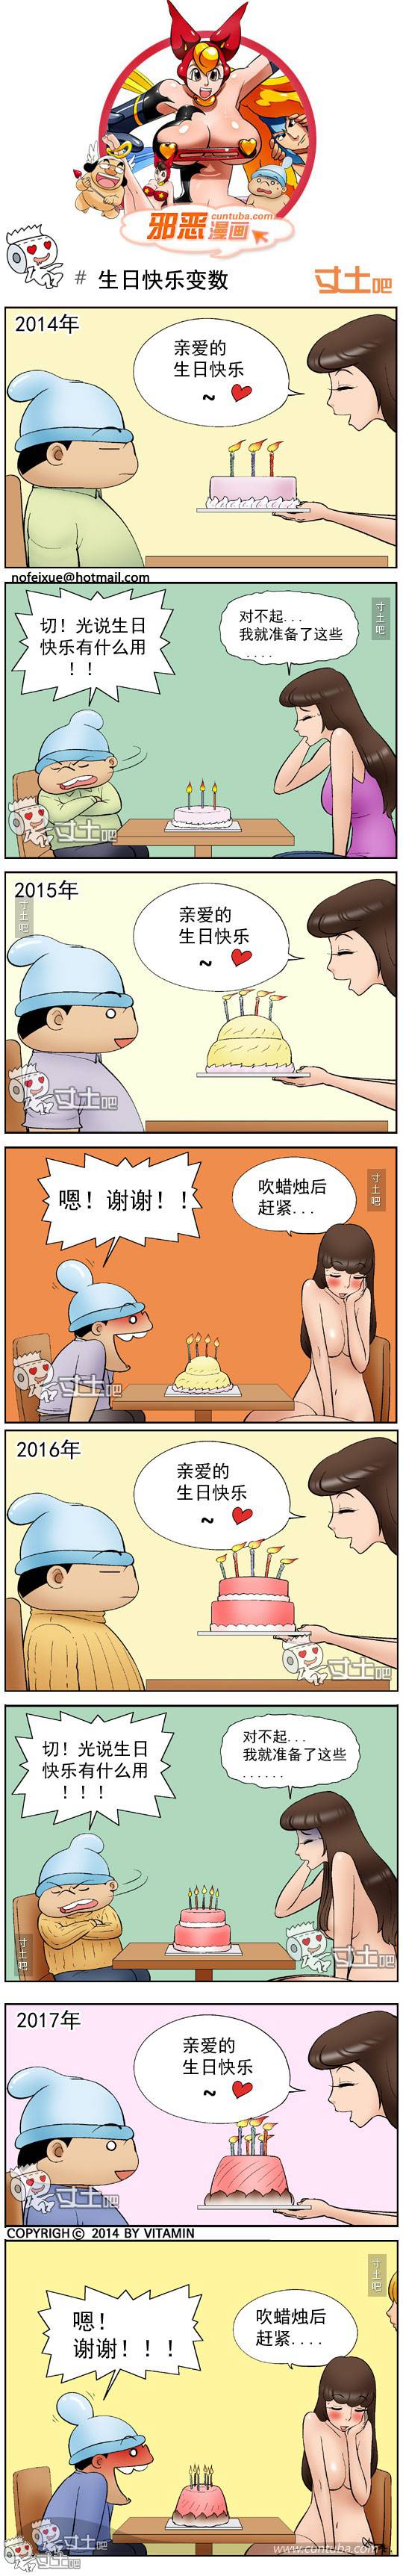 邪恶漫画爆笑囧图第264刊：圣神的治疗水